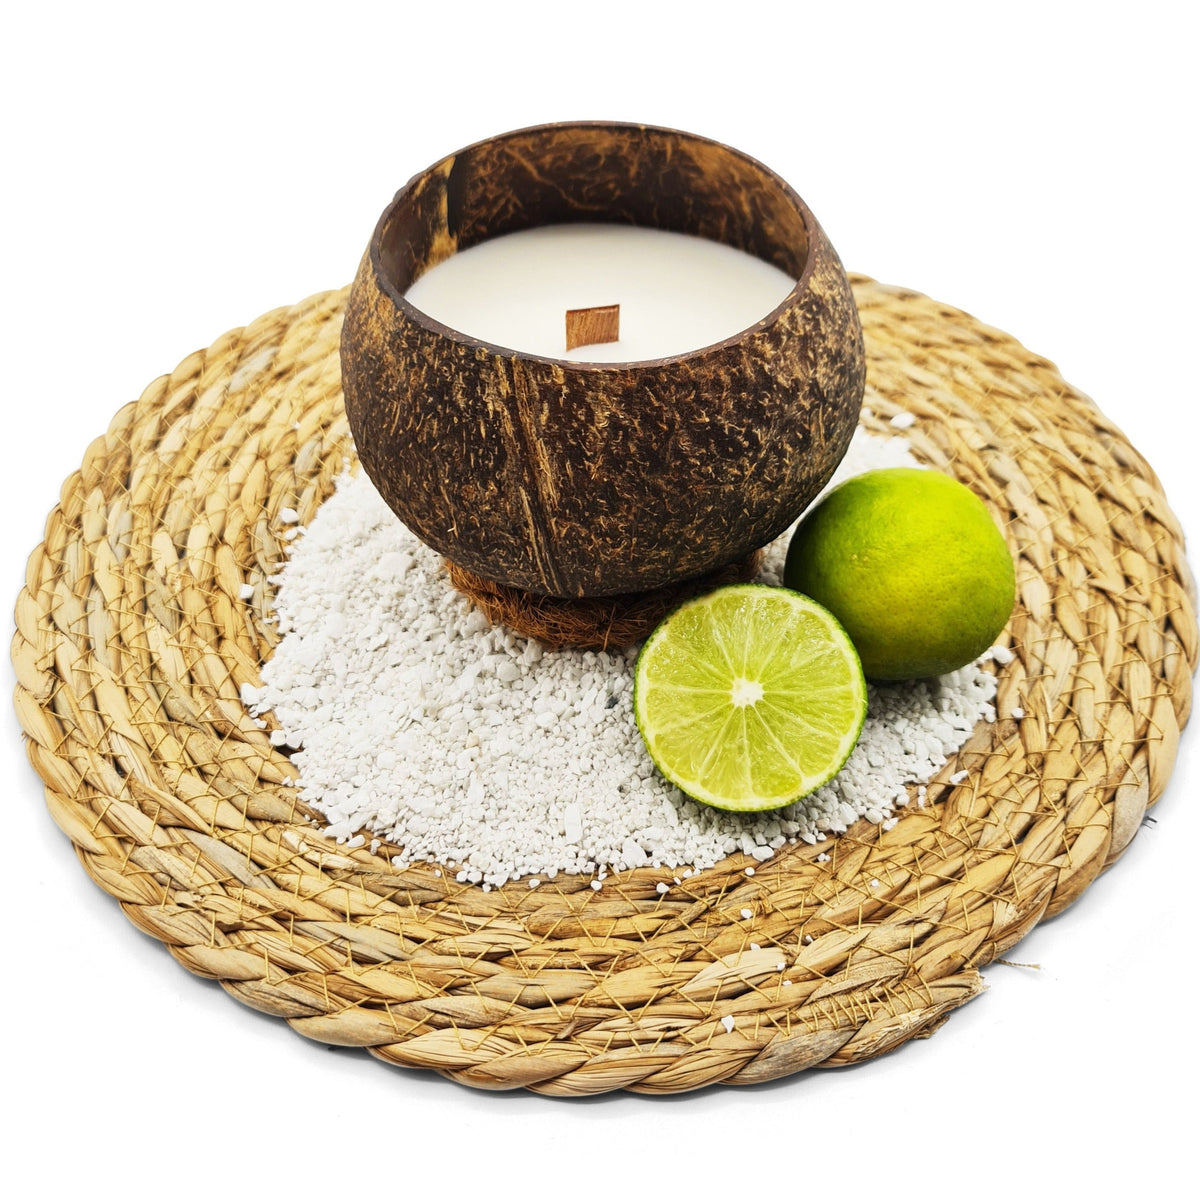 Kokosnoot Kaars - Coconut Lime